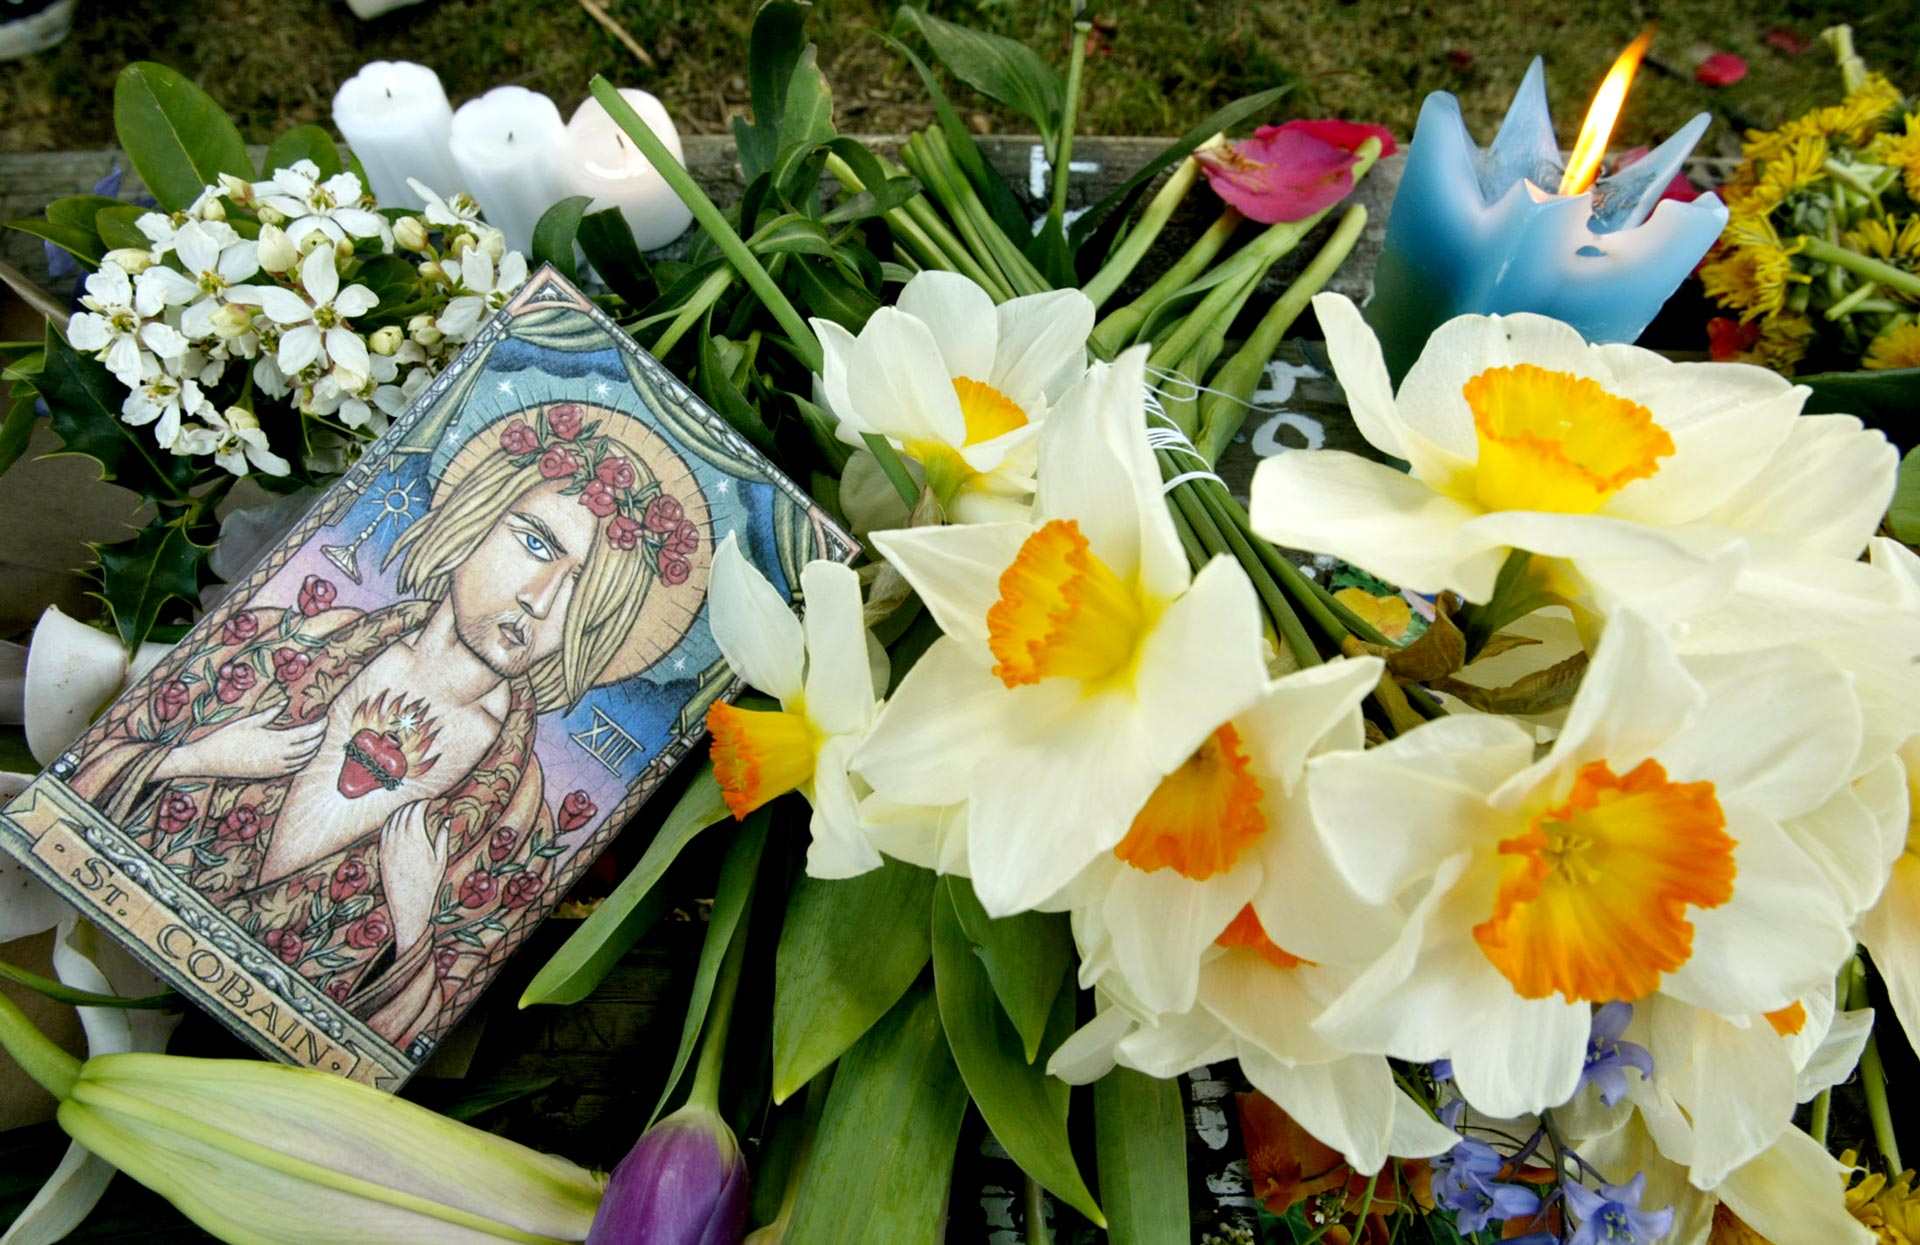 Flores, velas y dibujos conmemorando el décimo aniversario de la muerte de Cobain en Viretta Park en Seattle, Washington el 5 de abril de 2004 | Foto: Anthoy Bolante / Reuters